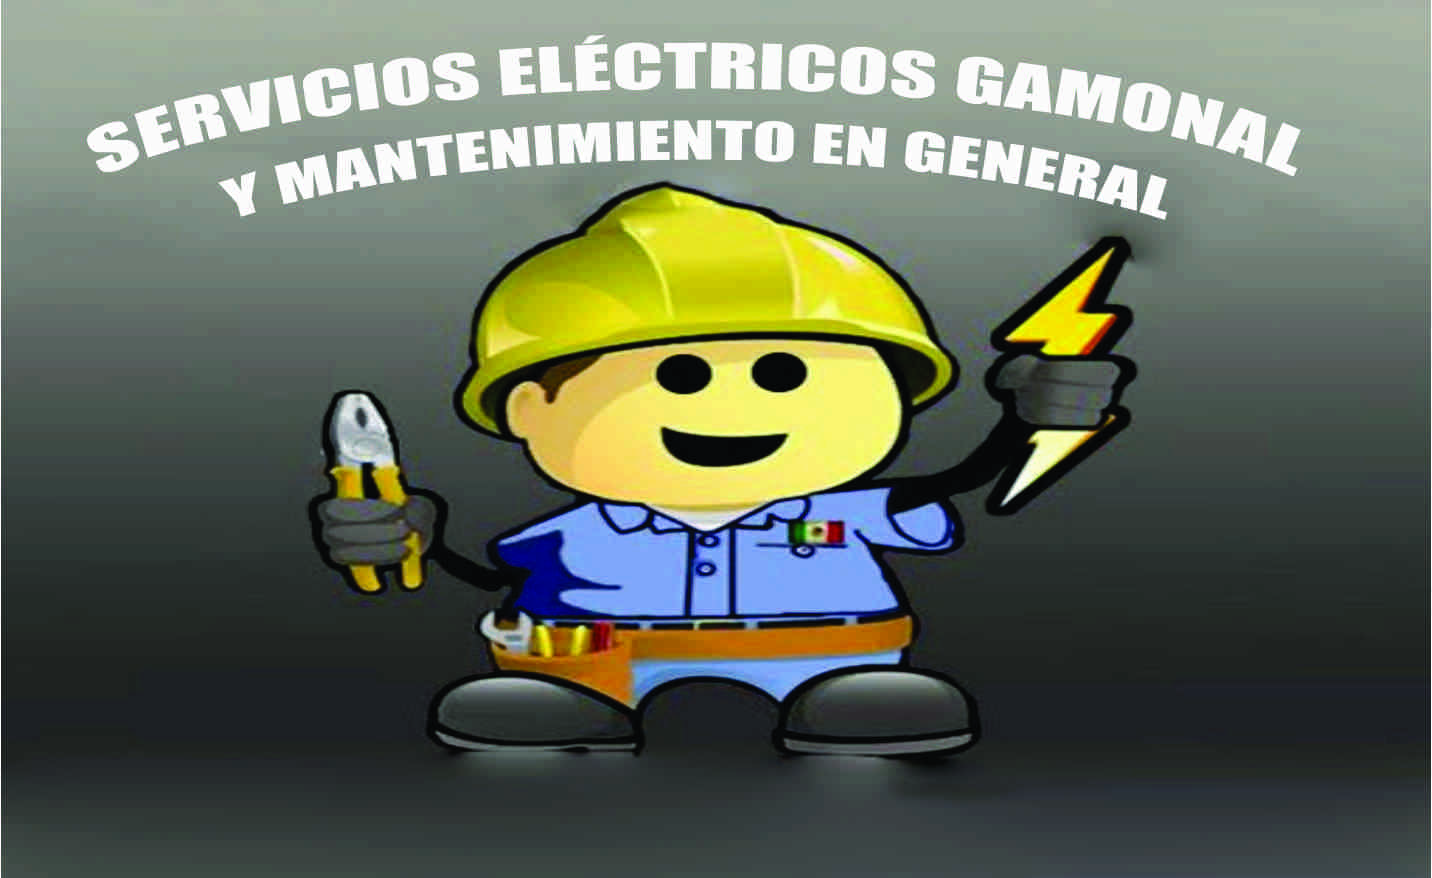 Servicios Eléctricos Gamonal logo